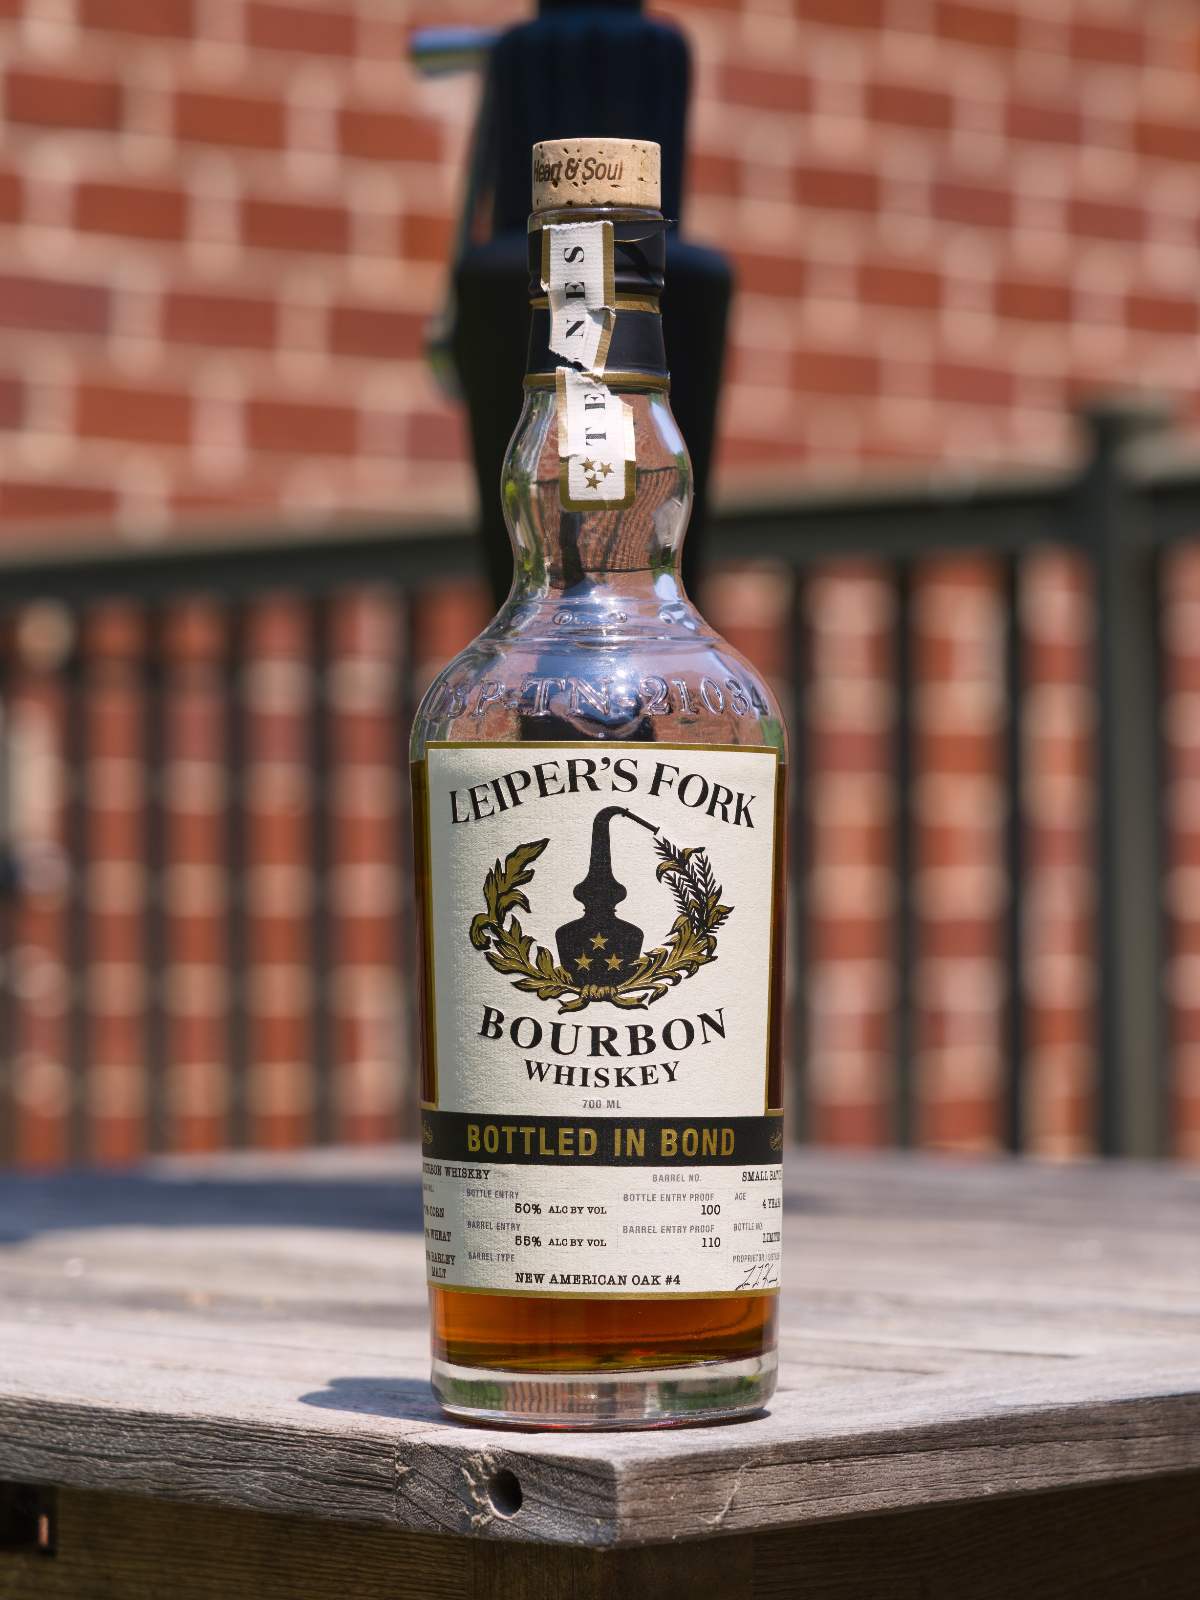 leiper’s fork bottled in bond bourbon featured